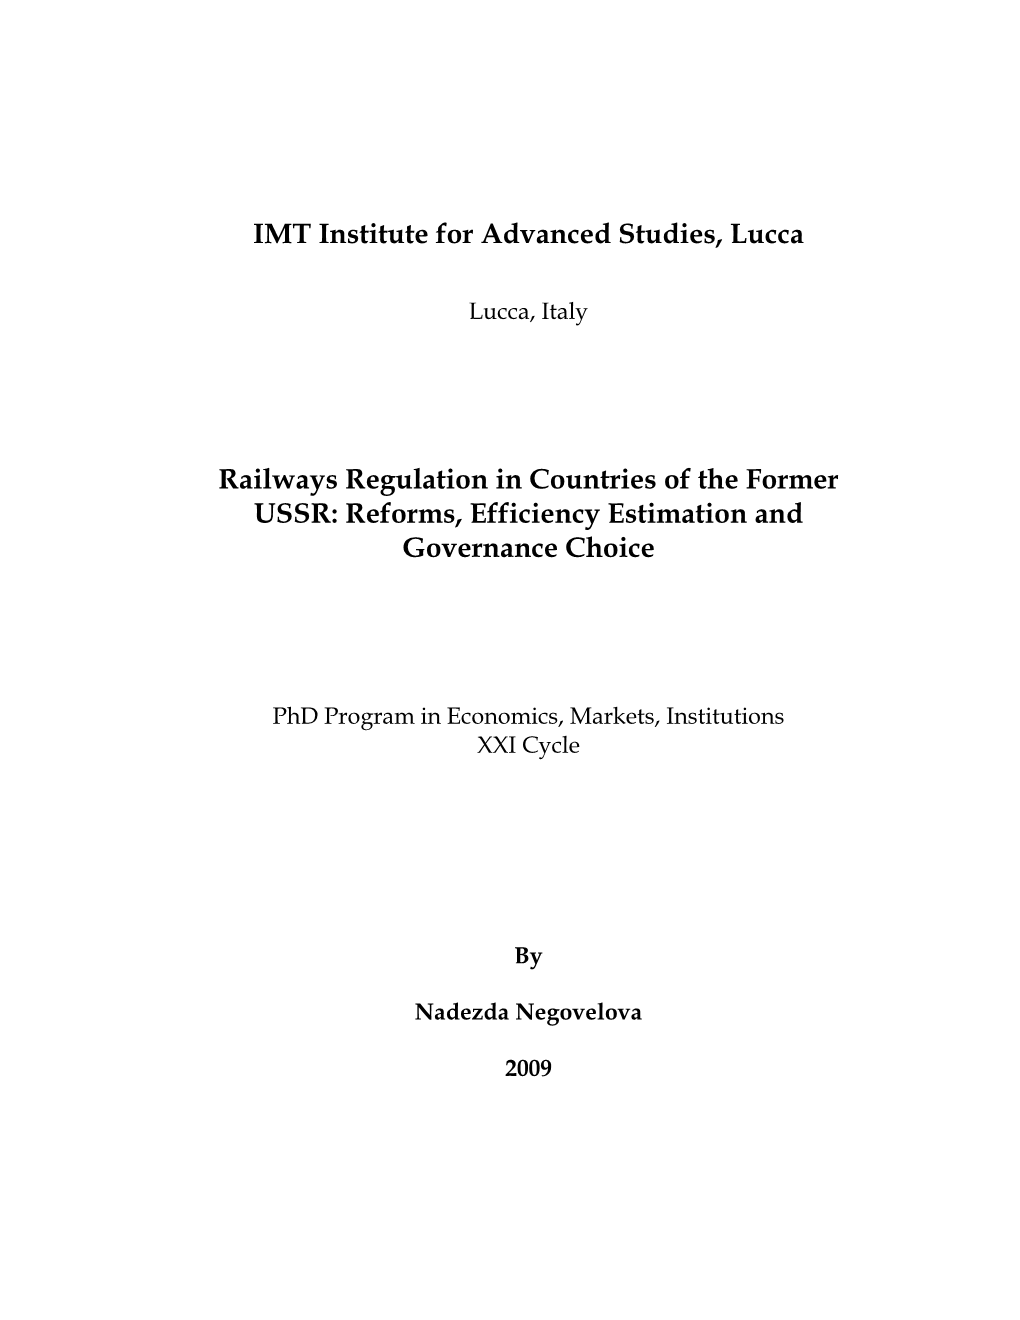 IMT Institute for Advanced Studies, Lucca Railways